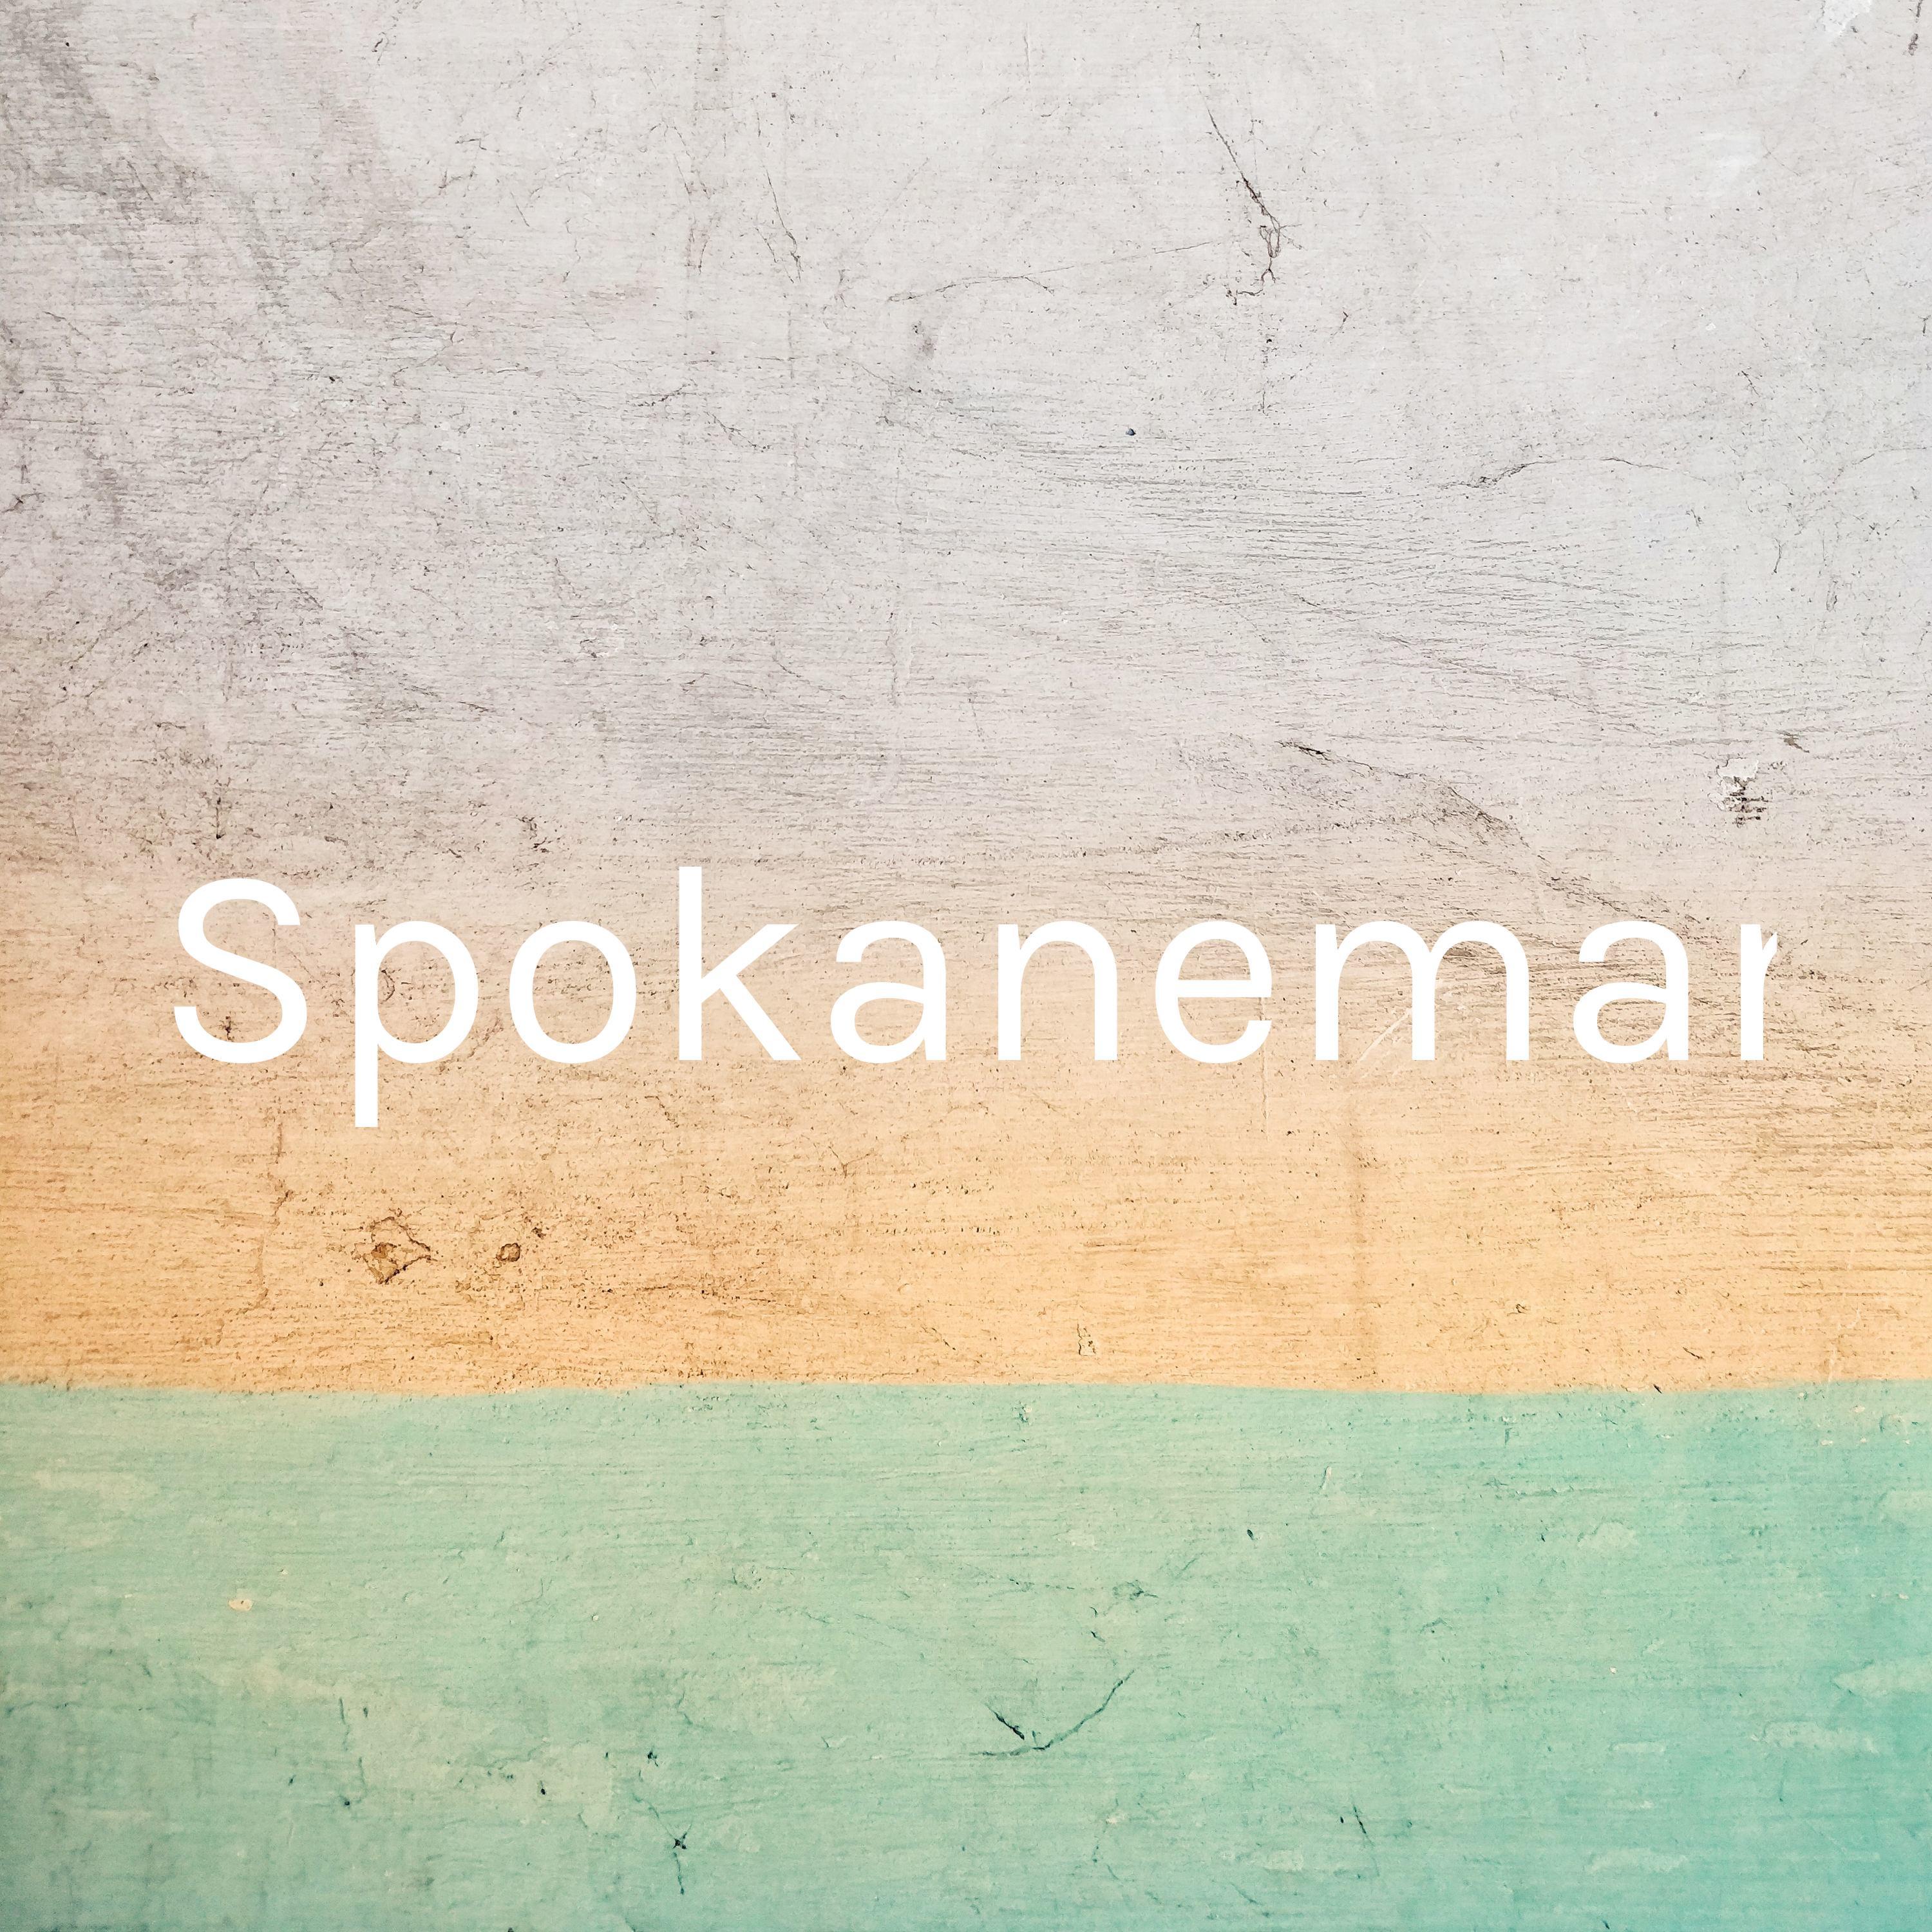 Spokanemanpodcast